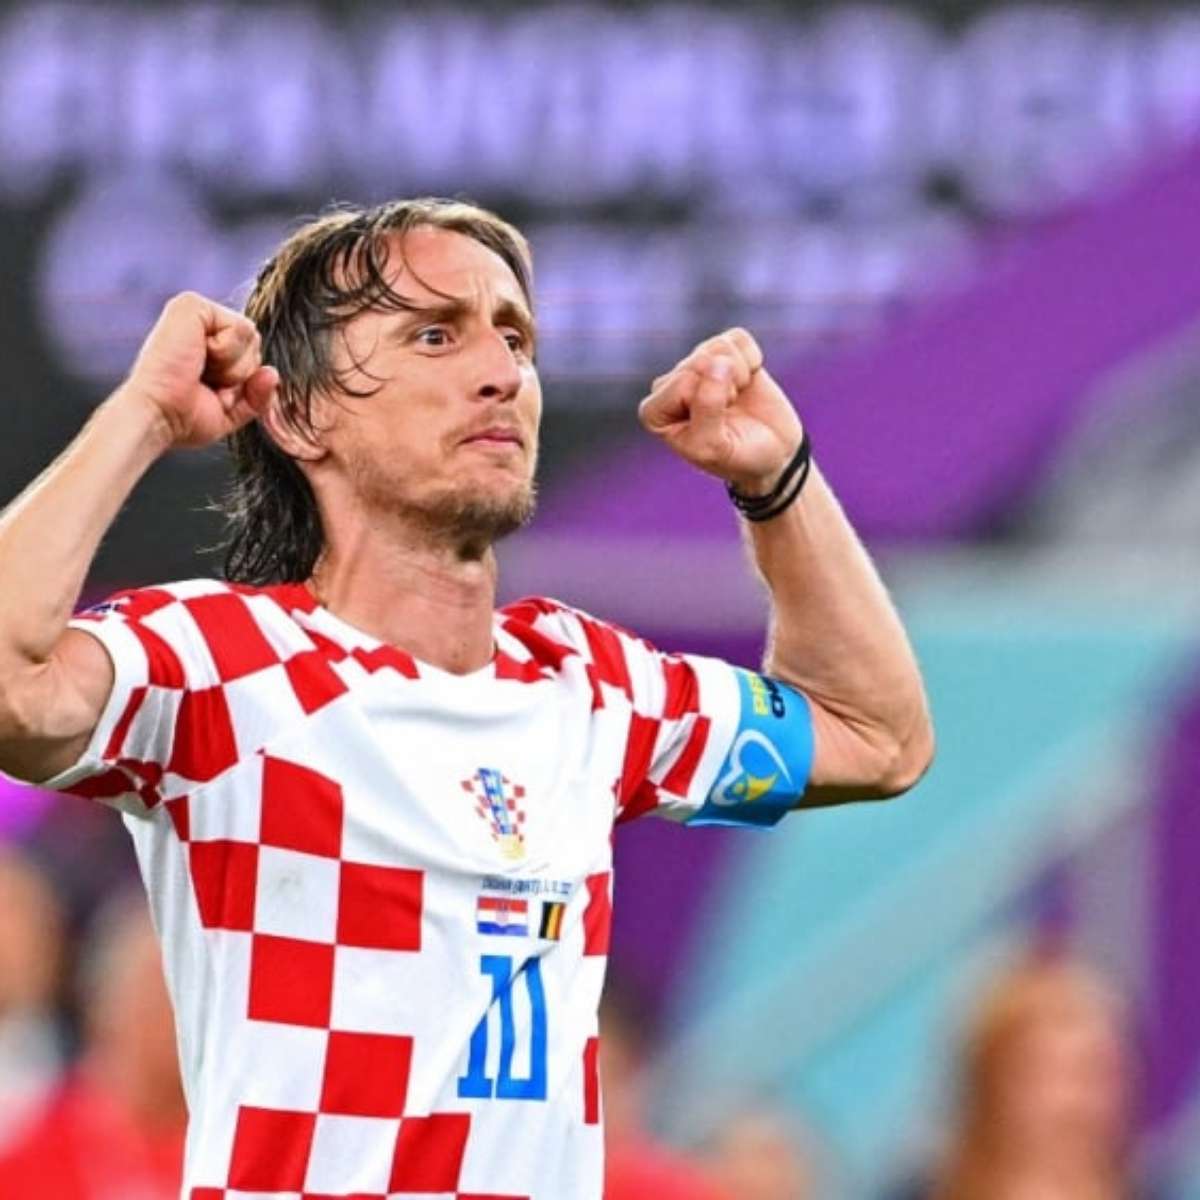 Croácia na Copa do Mundo: relembre a campanha de 2018 e veja